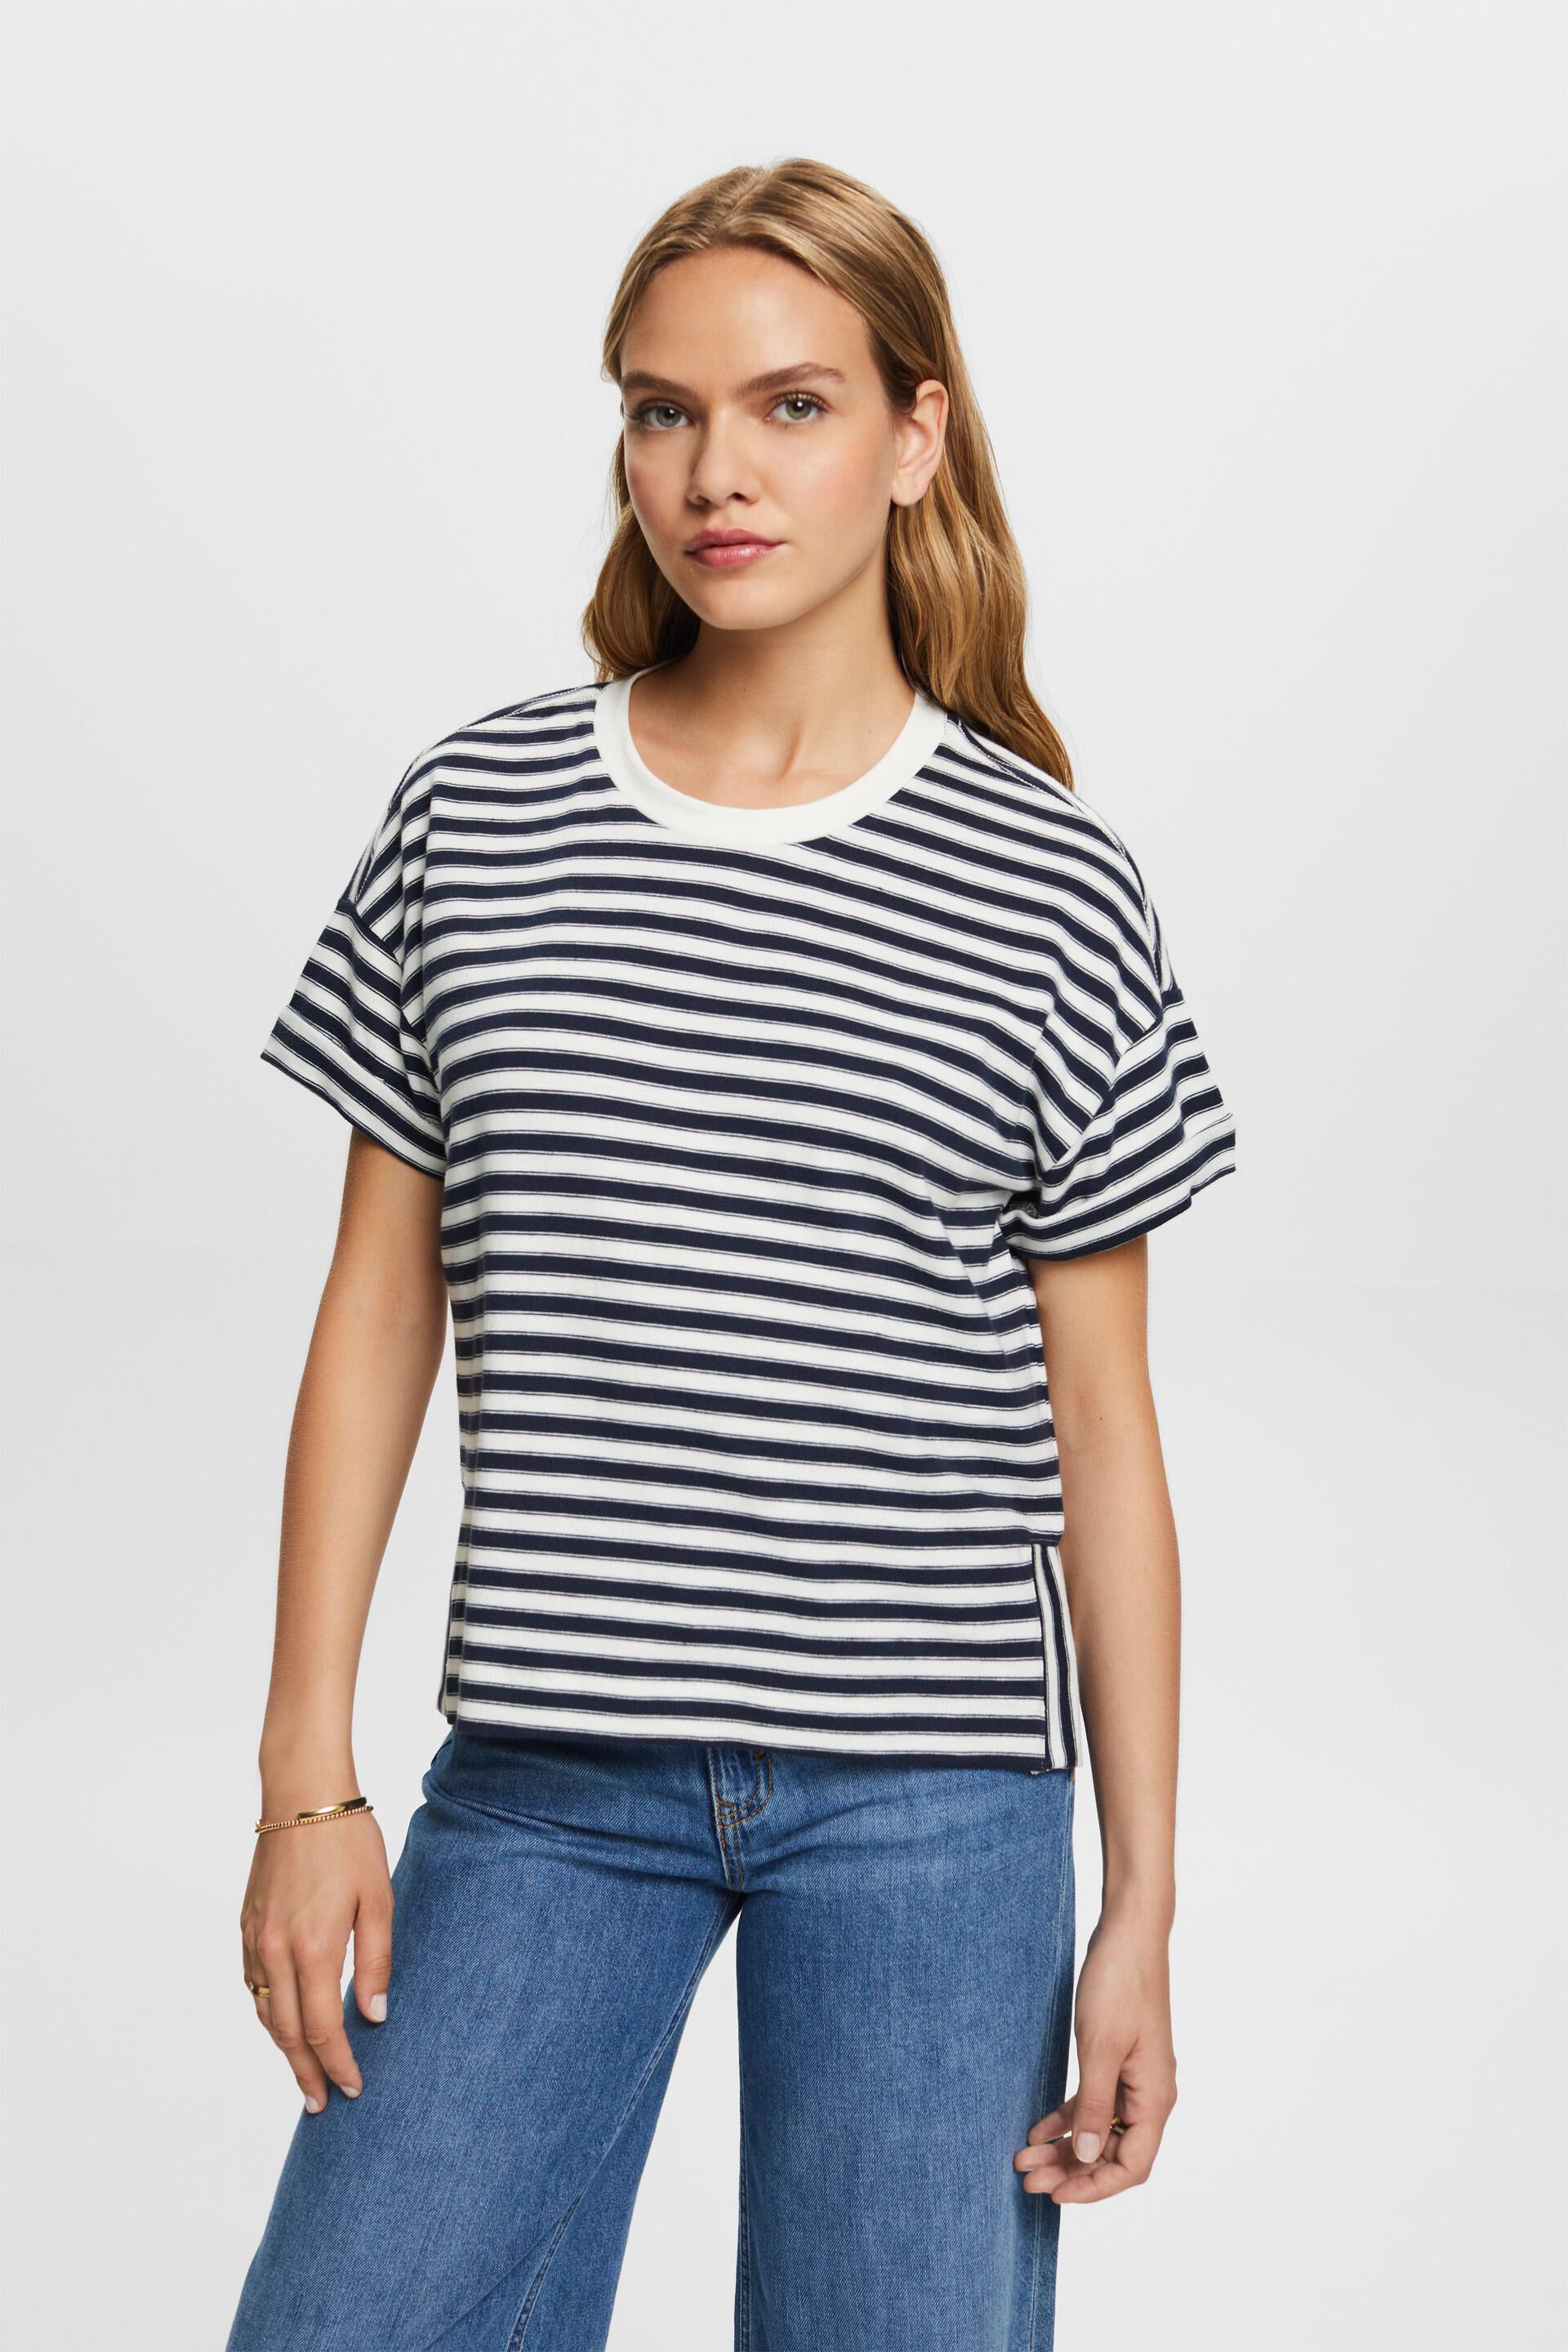 Esprit Striped cotton 100% t-shirt,